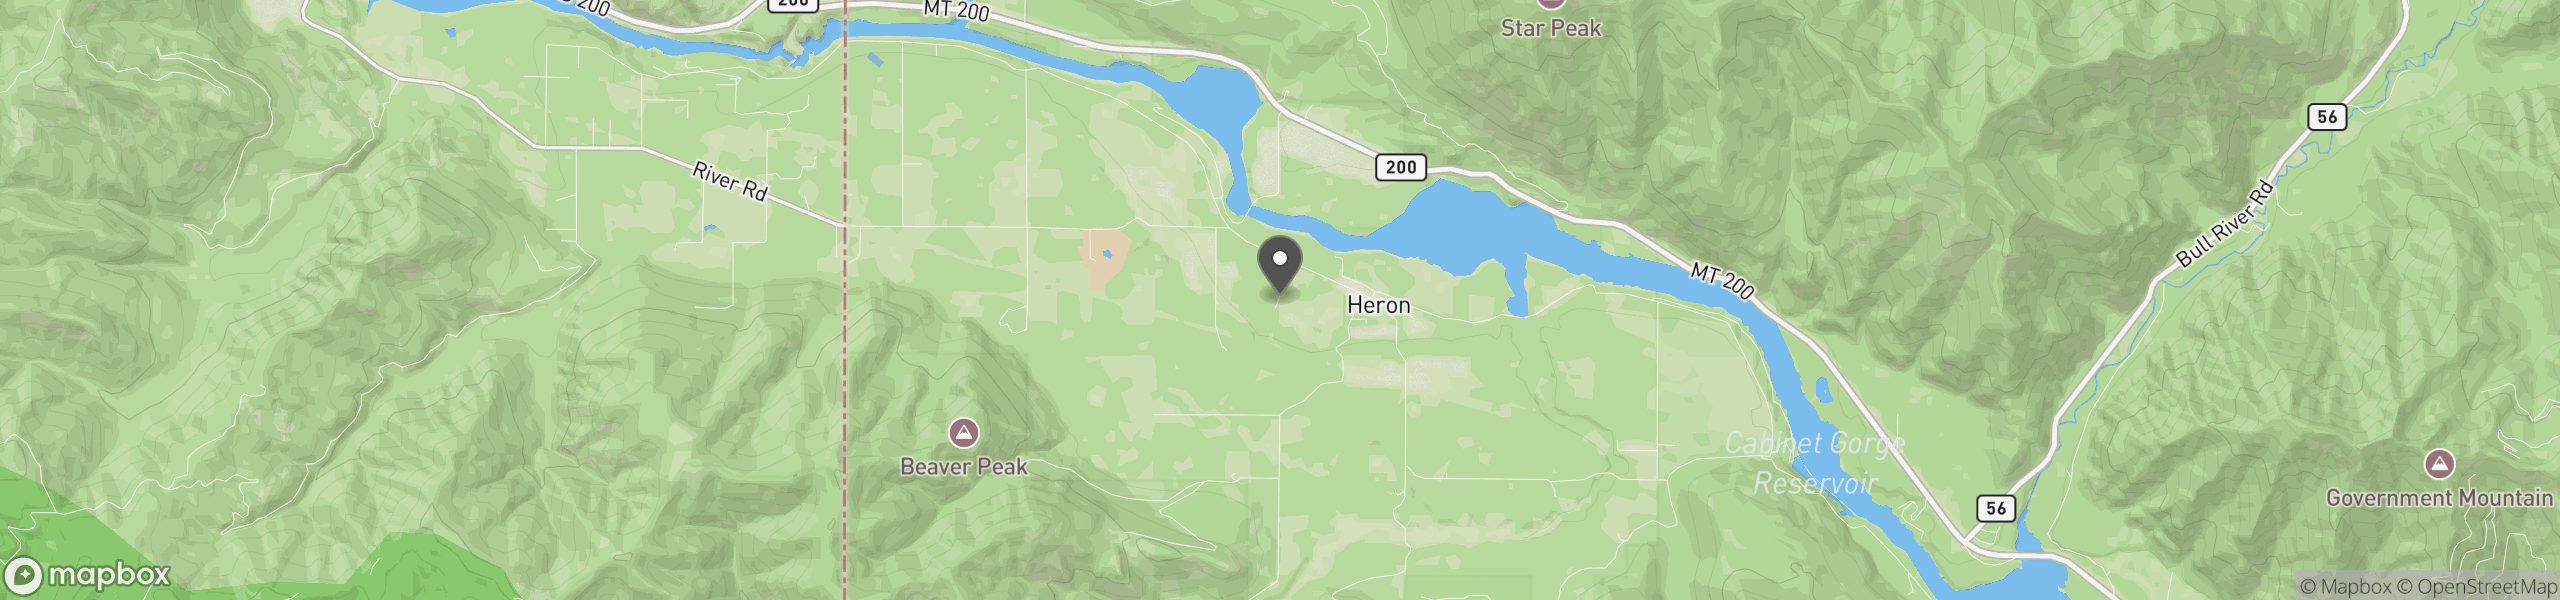 Heron, MT 59844